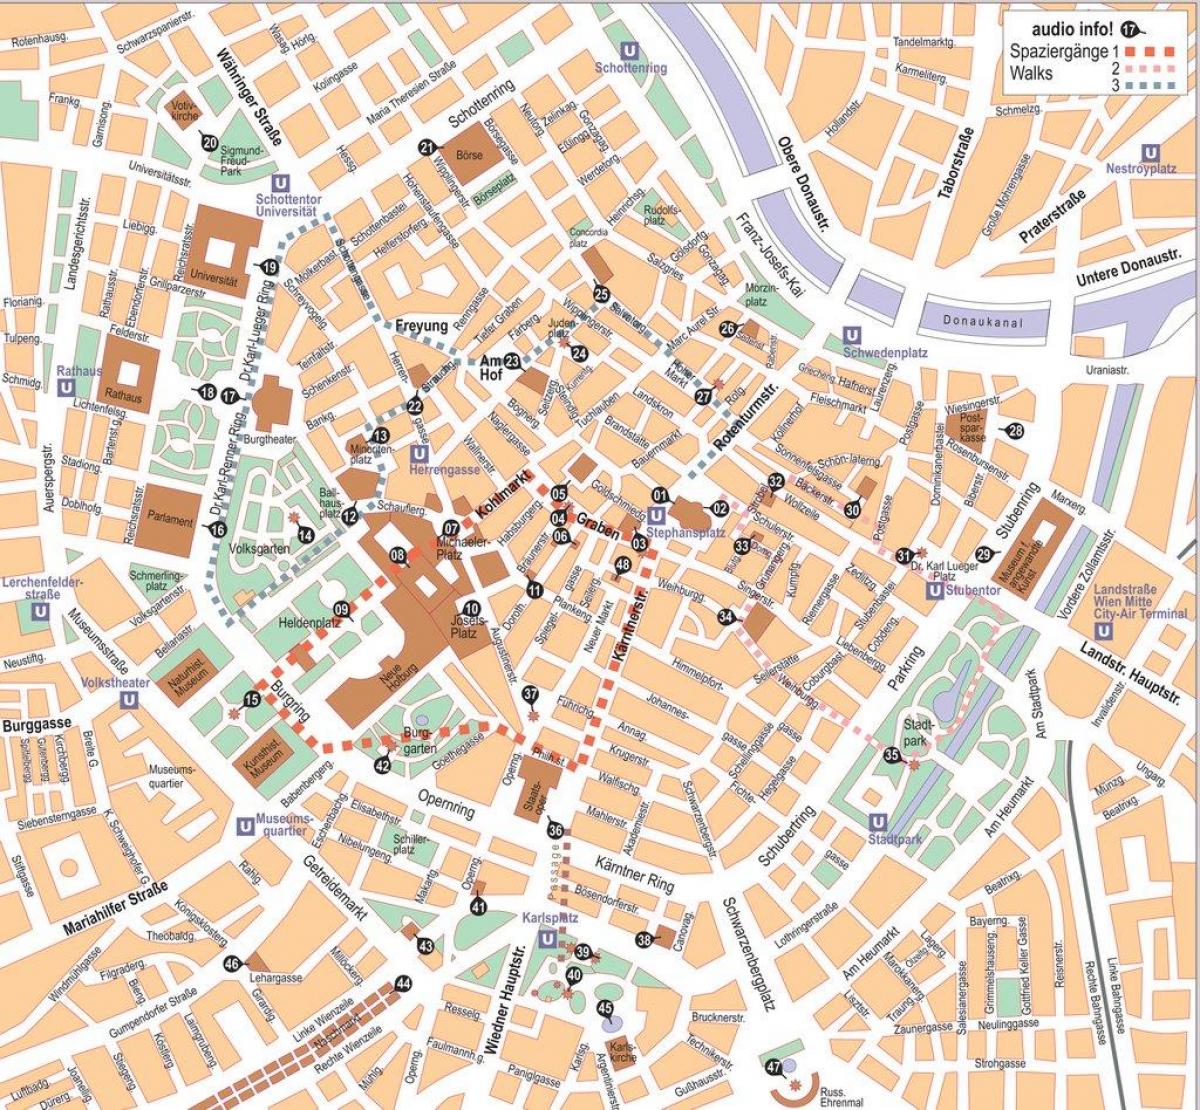 Χάρτης του Wien κέντρο